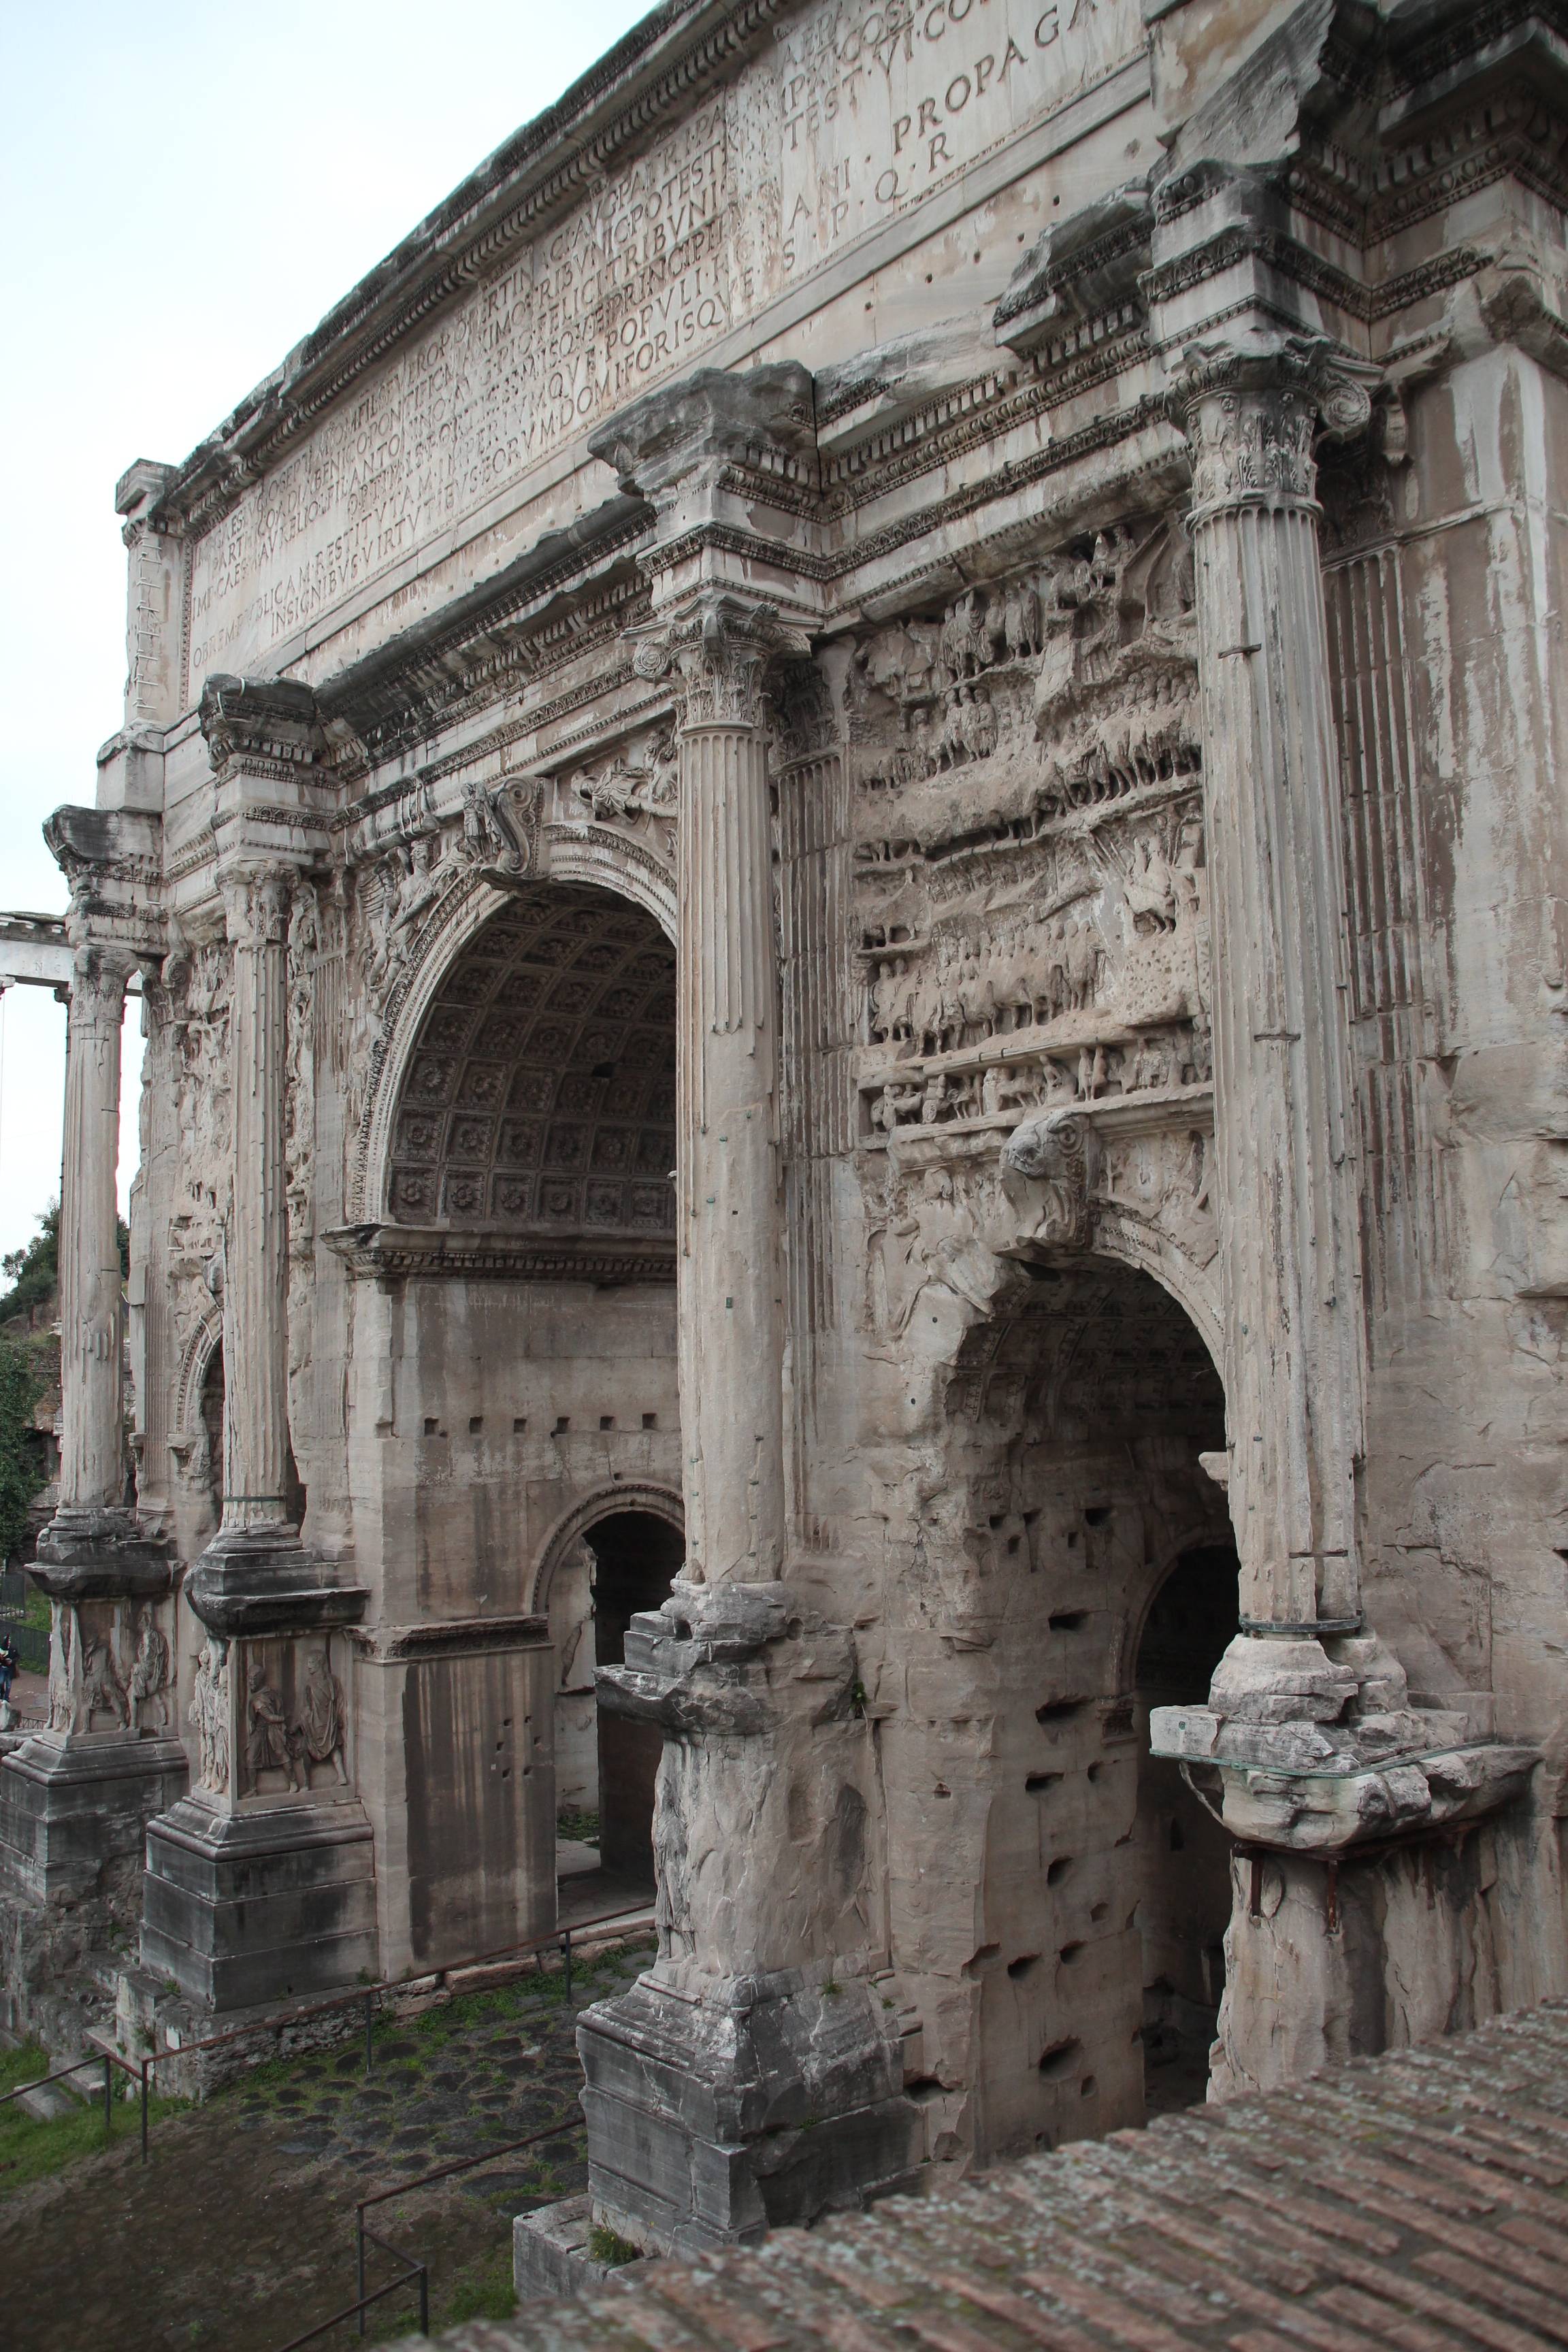 Teil vom Forum Romanum in Rom